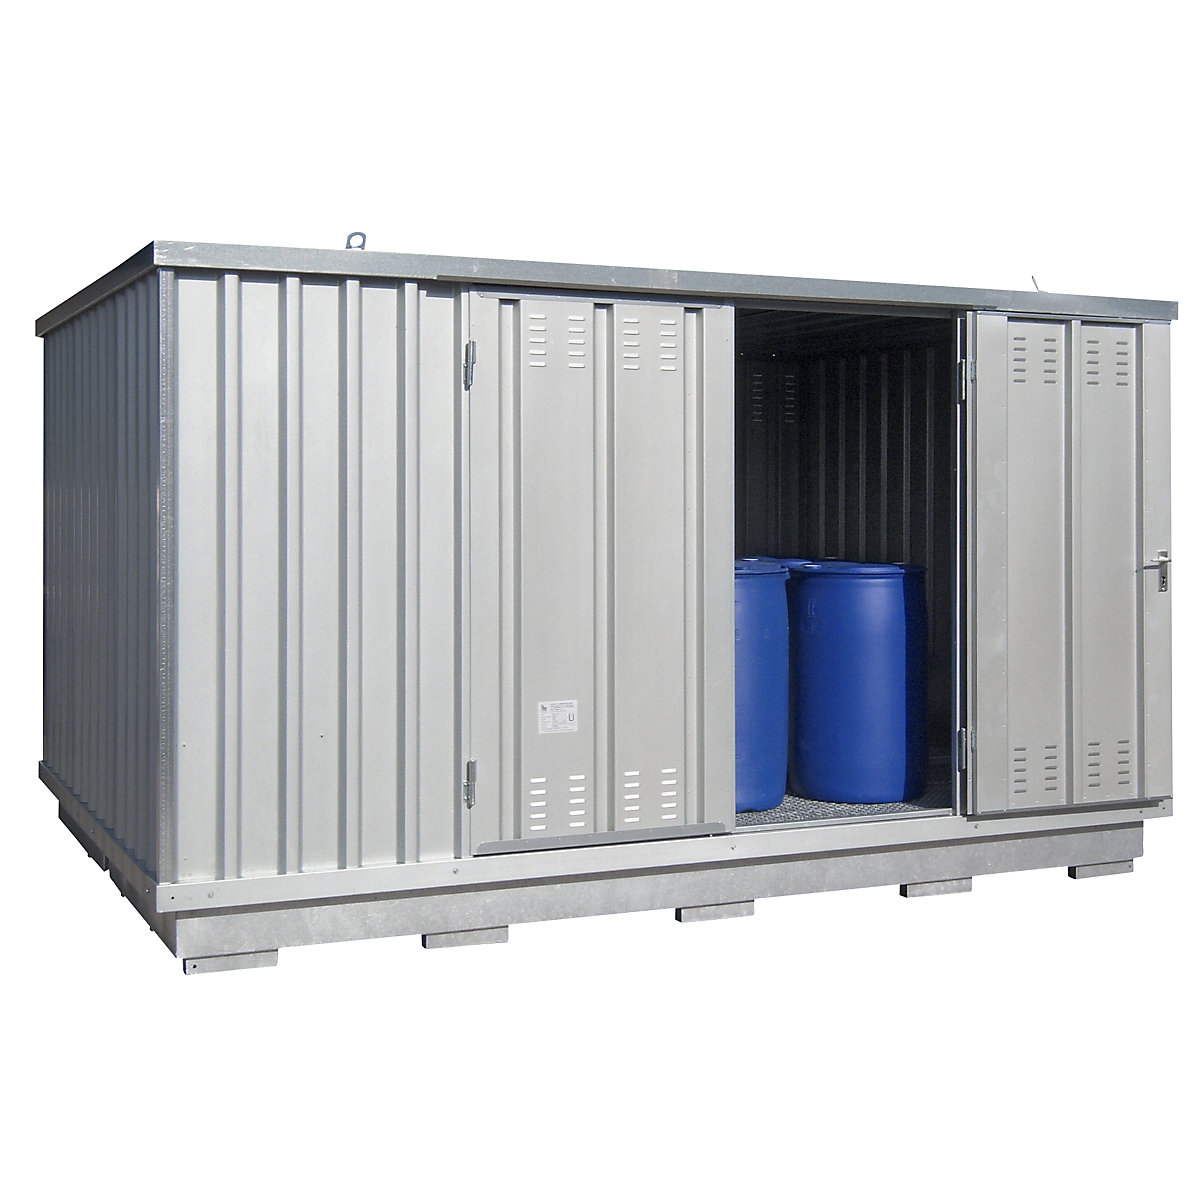 Gefahrstoff-Container zur aktiven Lagerung entzündbarer Stoffe, Außen-HxBxT 2400 x 4075 x 2875 mm, verzinkt